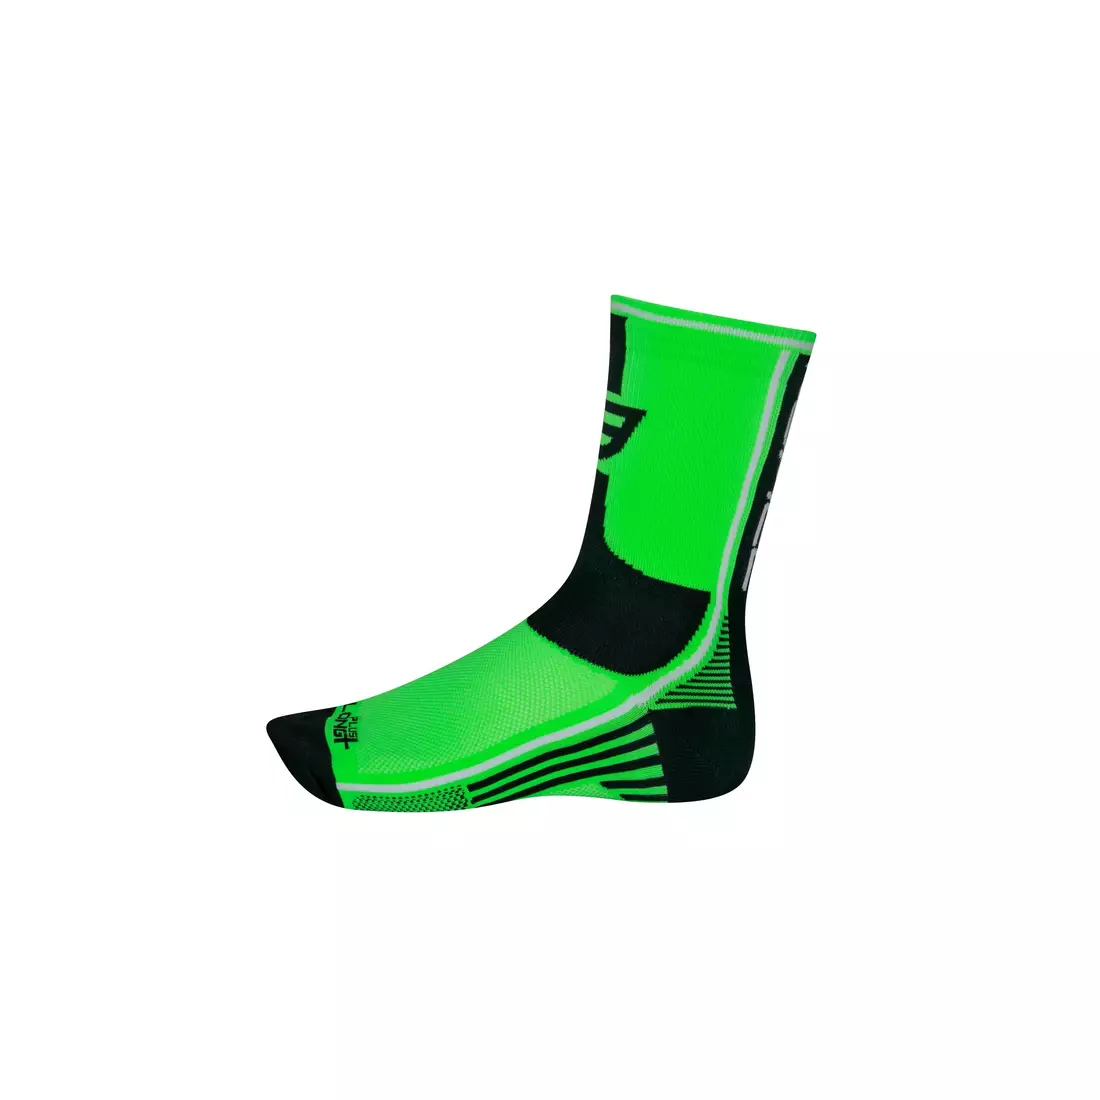 FORCE LONG PLUS ponožky 900956-900966 zelené a černé